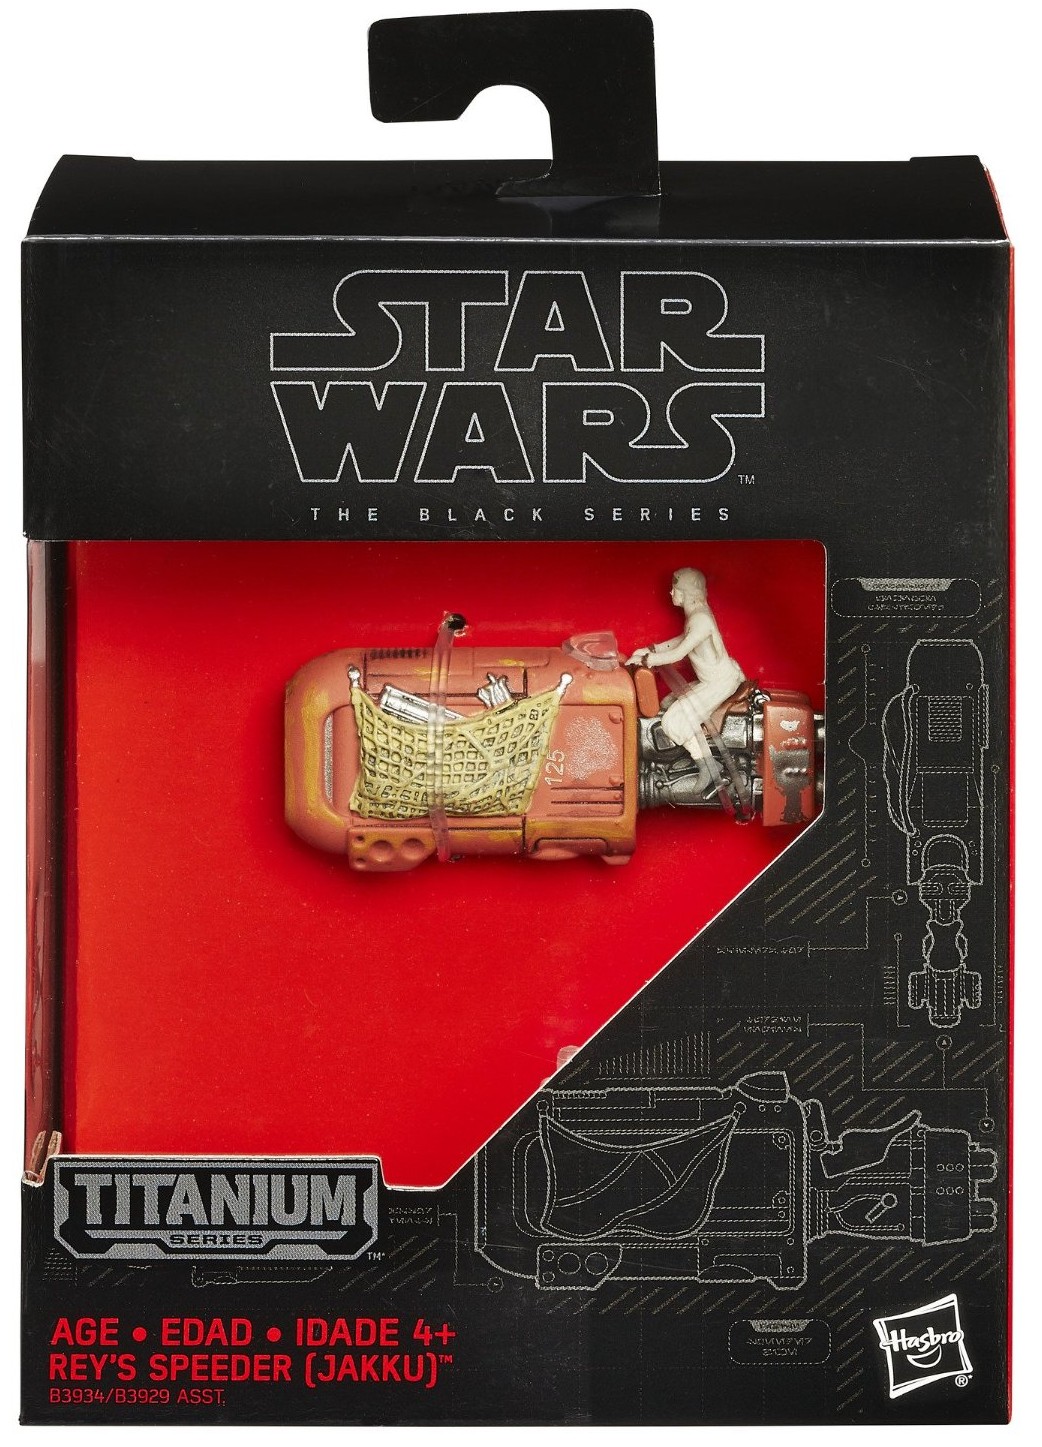 Rey's Speeder (Jakku) Titanium Series vehicle toy 1